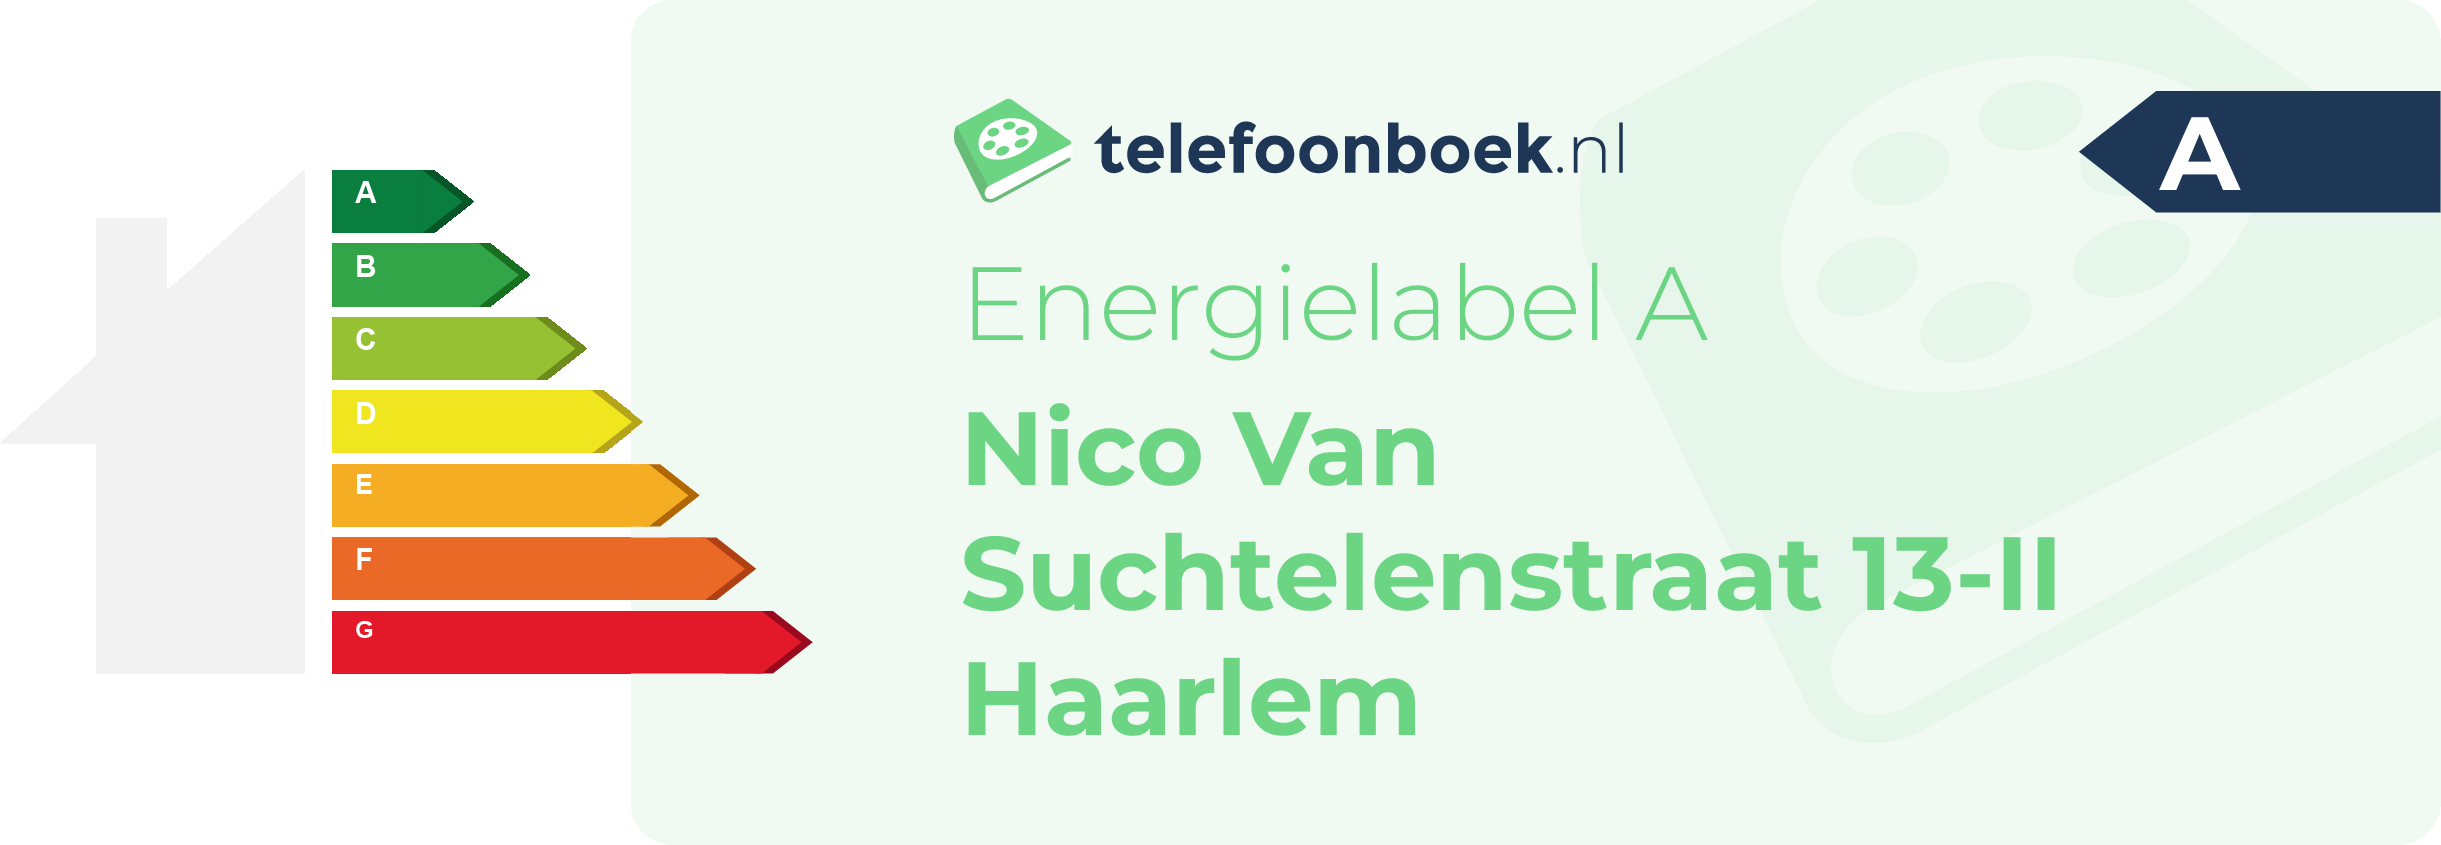 Energielabel Nico Van Suchtelenstraat 13-II Haarlem